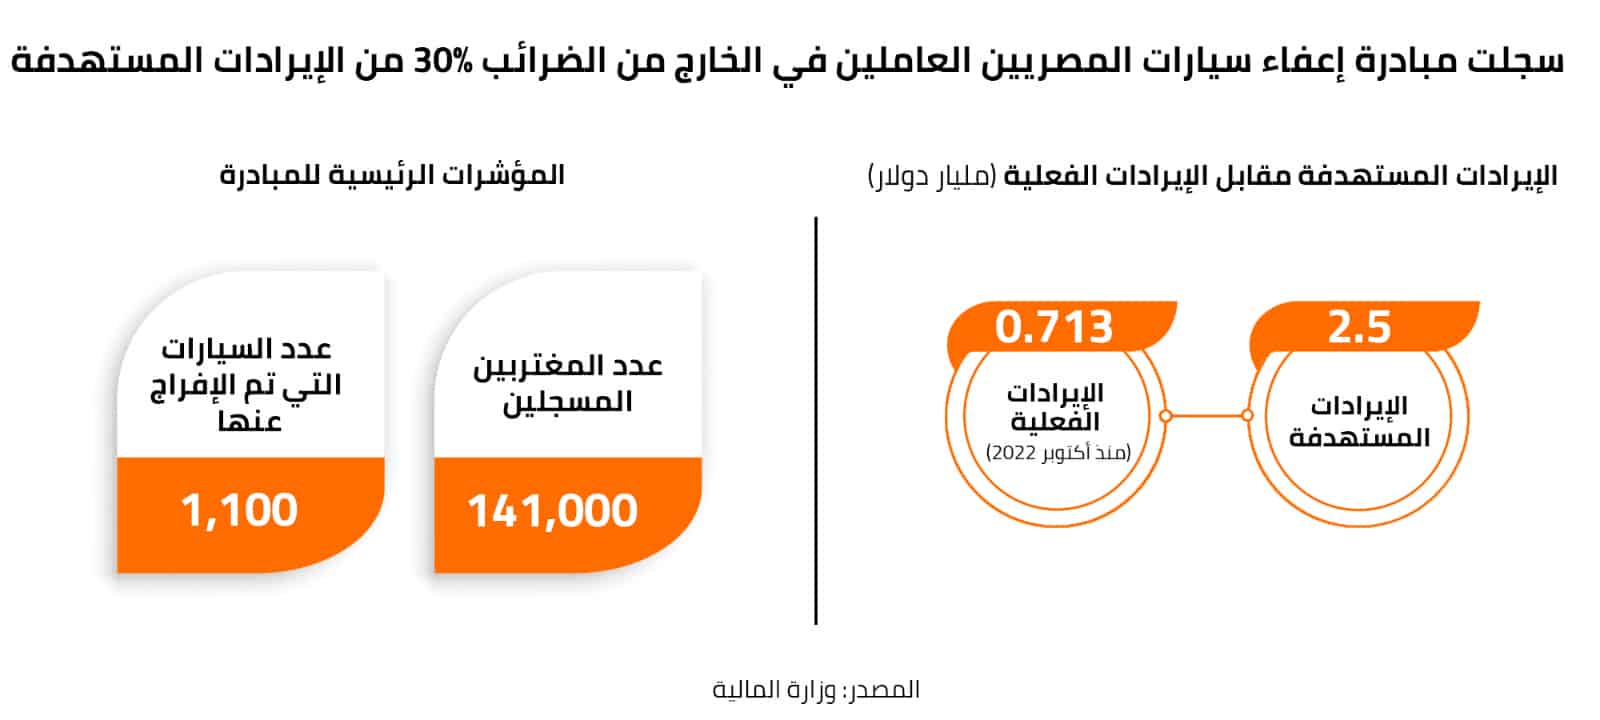 سجلت مبادرة إعفاء سيارات المصريين بالخارج من الضرائب 30% من الإيرادات المستهدفة 